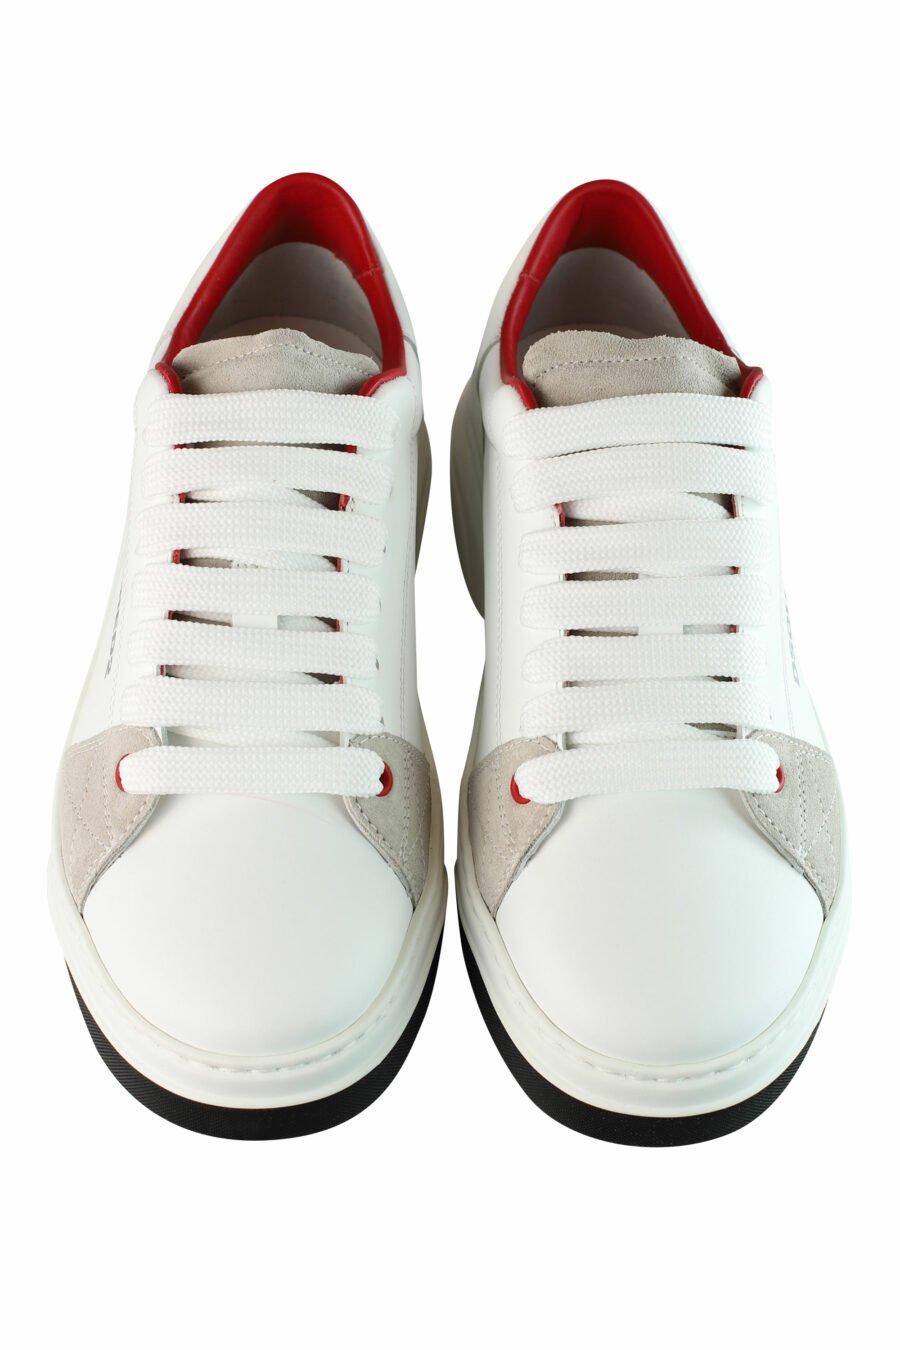 Baskets blanches avec logo en forme de feuille rouge et détails beiges - IMG 1441